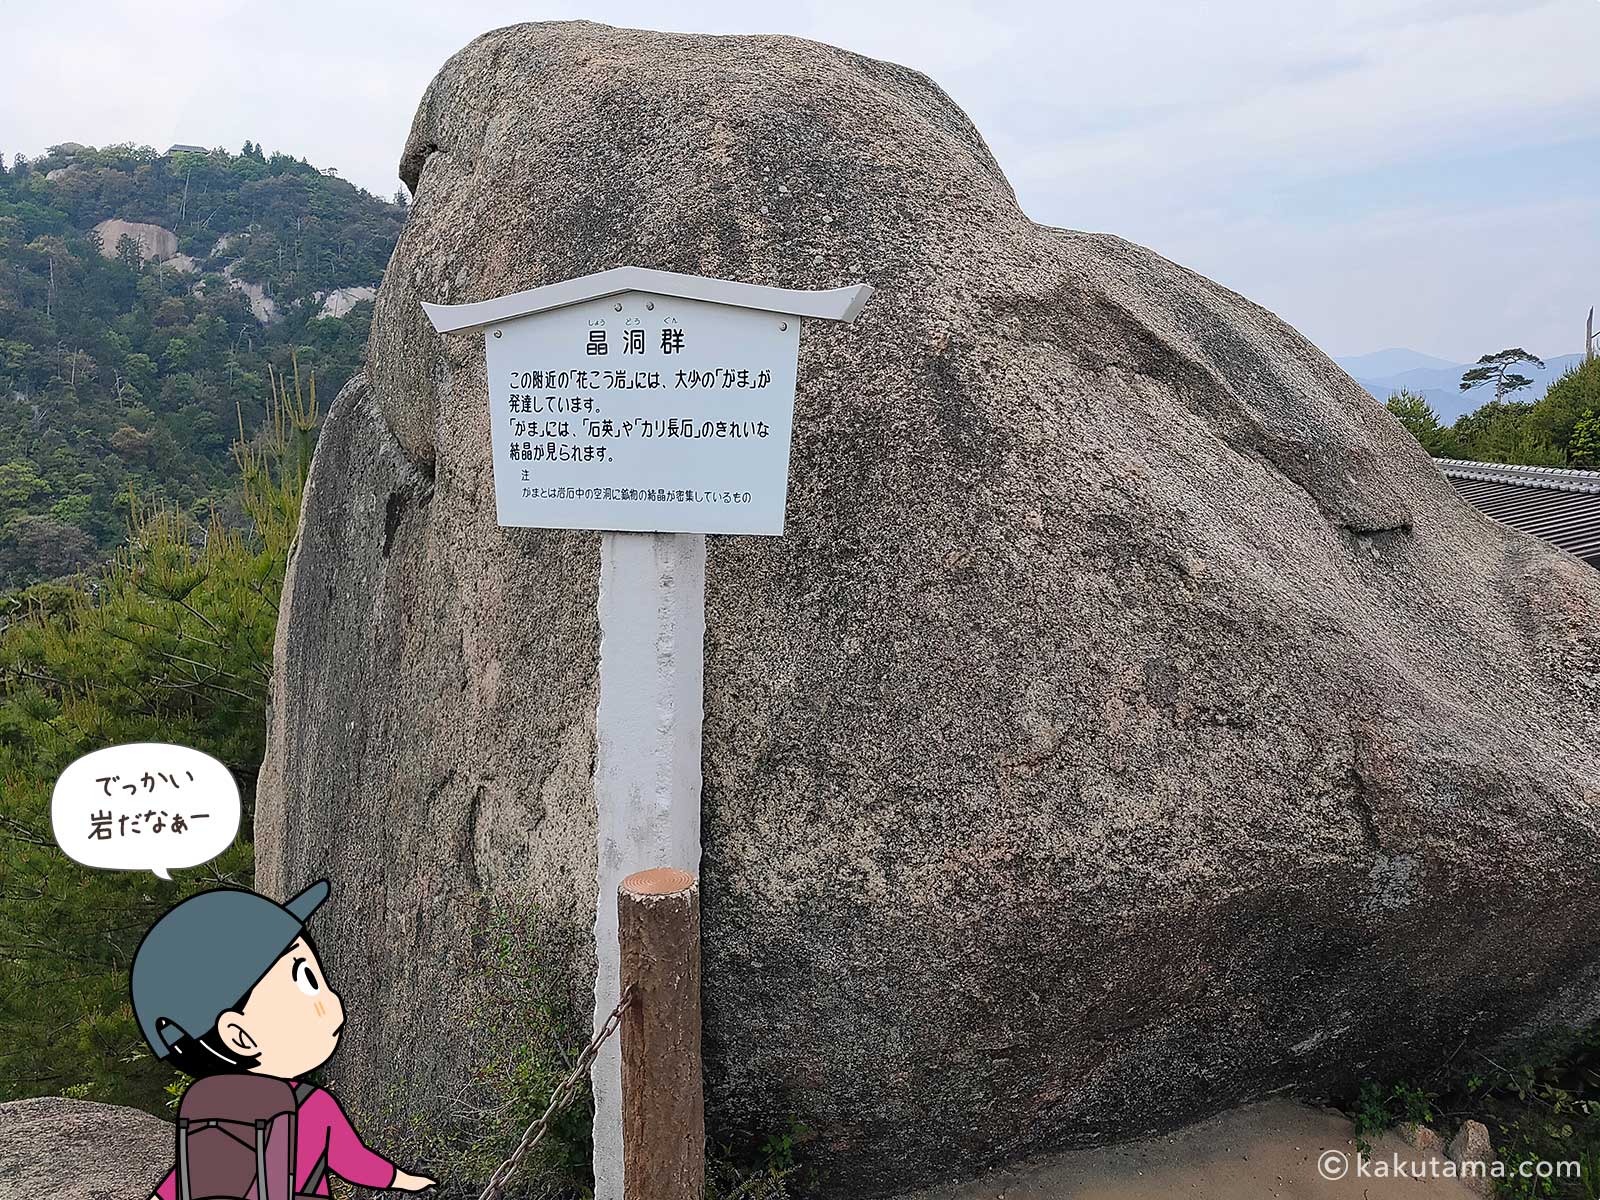 獅子岩駅の巨石の写真と登山者のイラスト